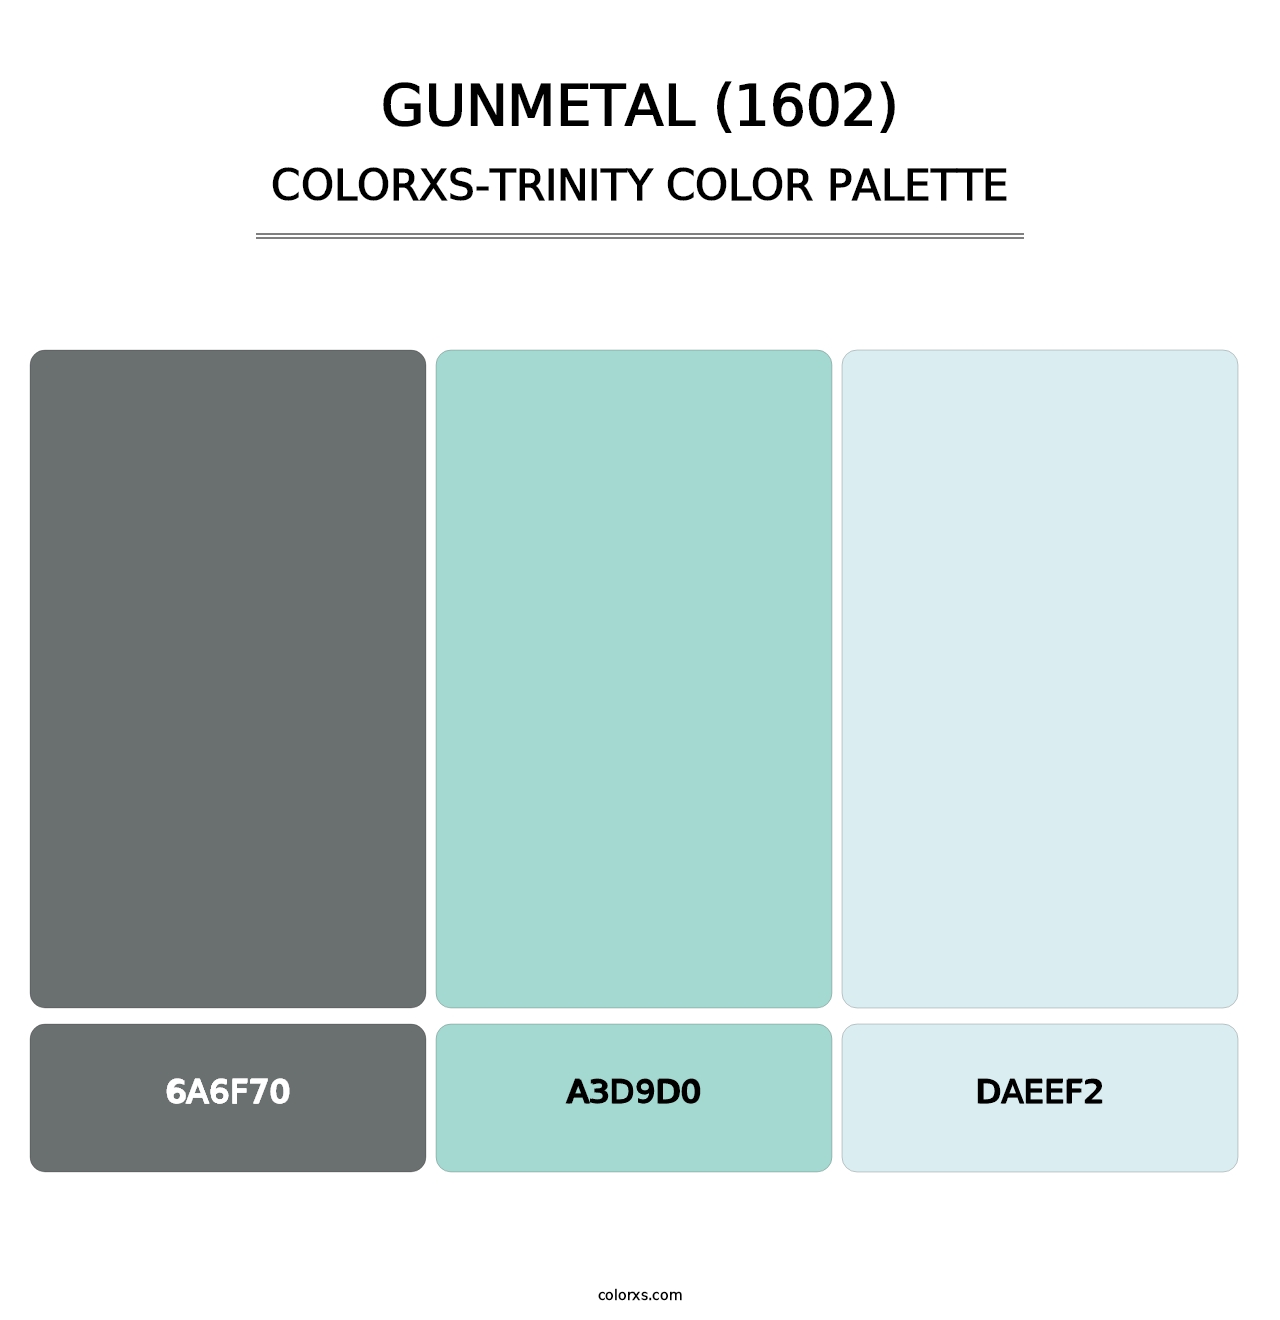 Gunmetal (1602) - Colorxs Trinity Palette